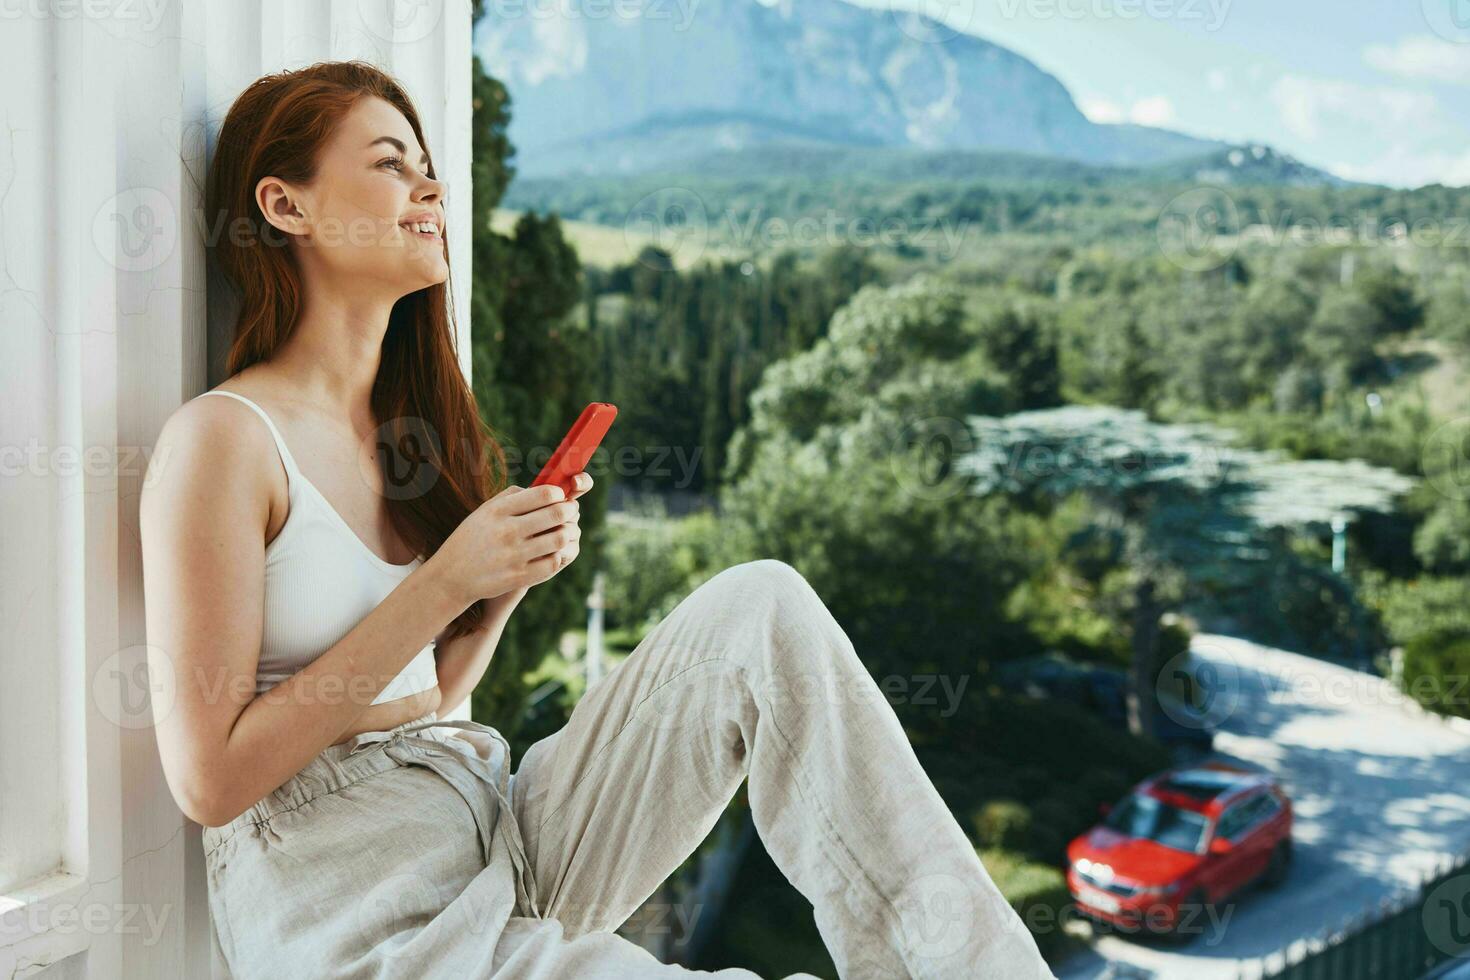 ziemlich Frau mit lange Haar auf ein öffnen Balkon Grün Natur Sommer- Tag Berg Aussicht foto